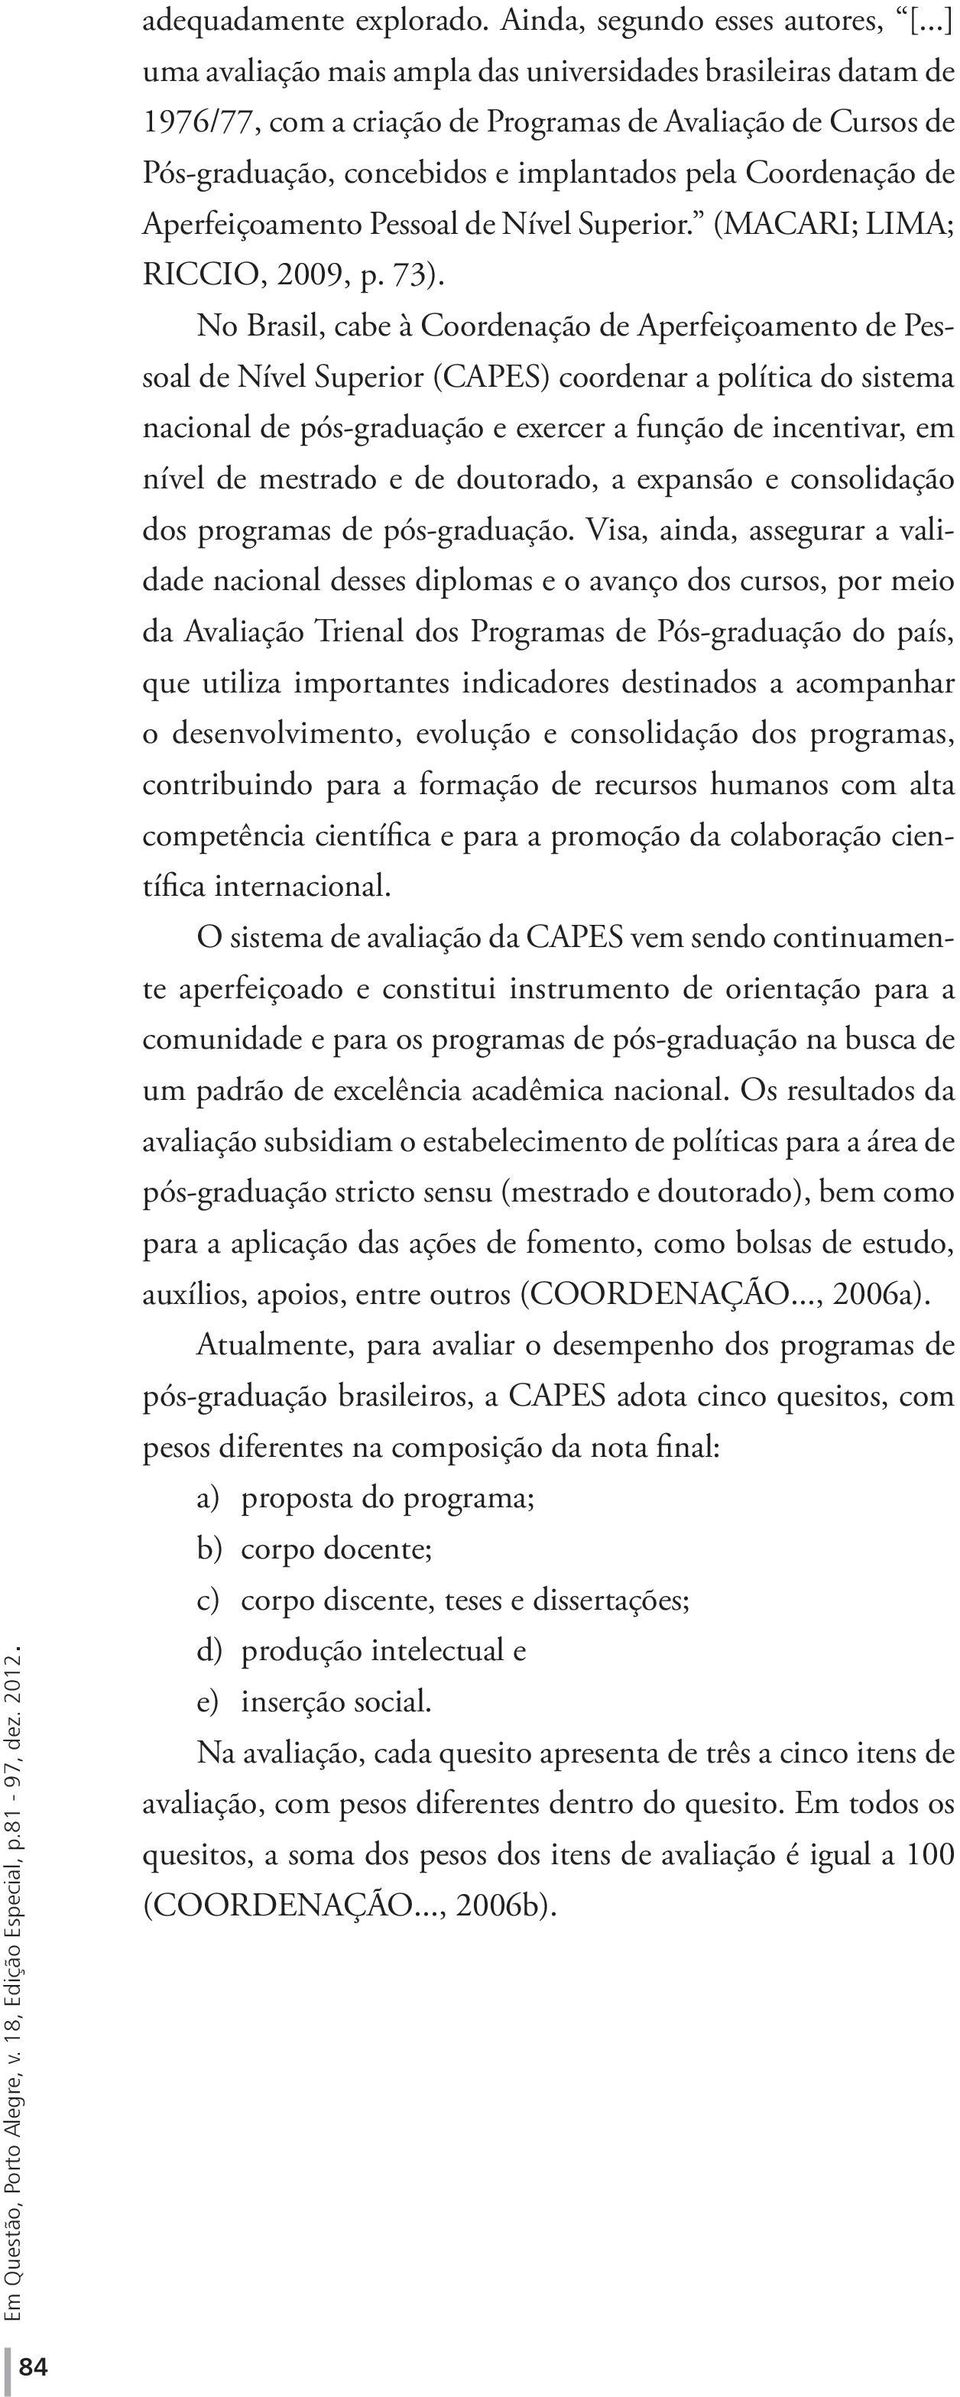 Aperfeiçoamento Pessoal de Nível Superior. (MACARI; LIMA; RICCIO, 2009, p. 73).